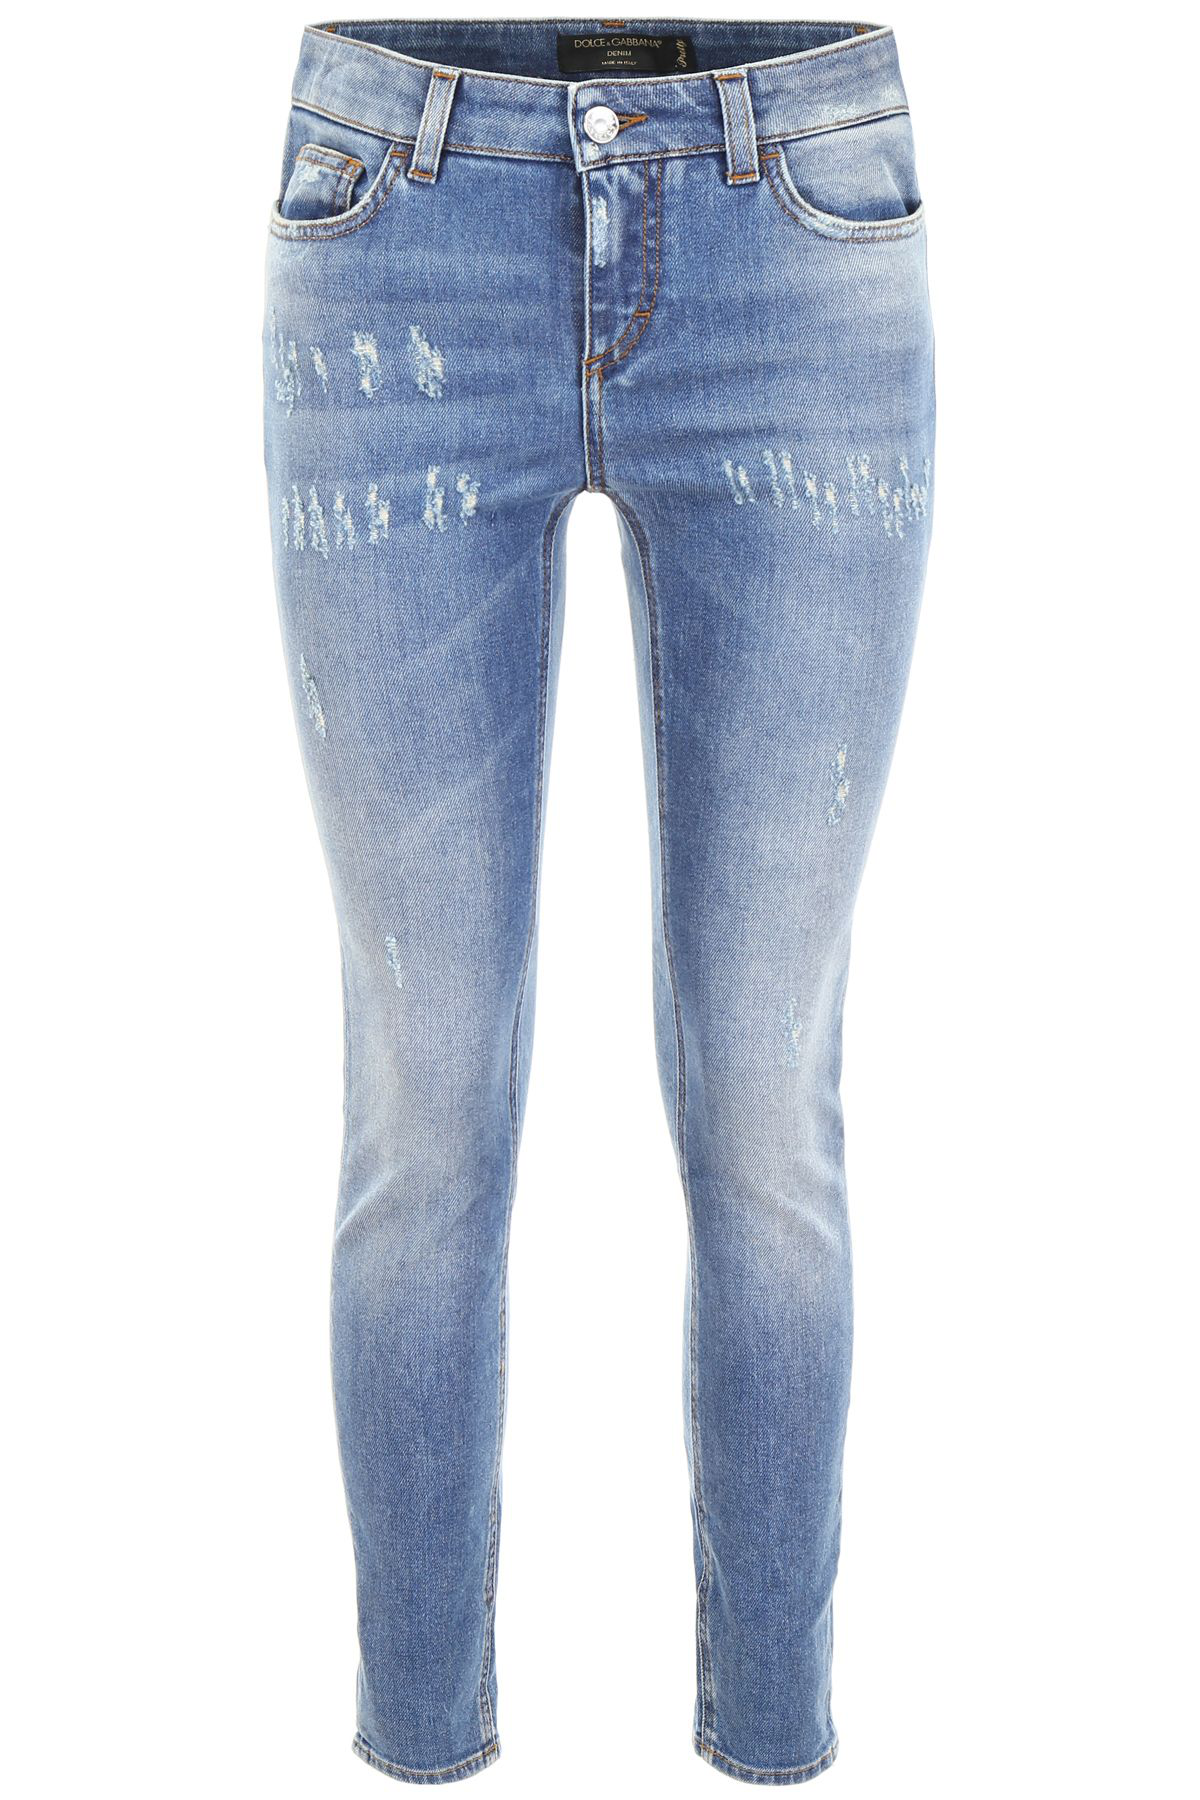 Dolce & Gabbana Denim Stretch Fit Pretty Jeans In Blue | ModeSens